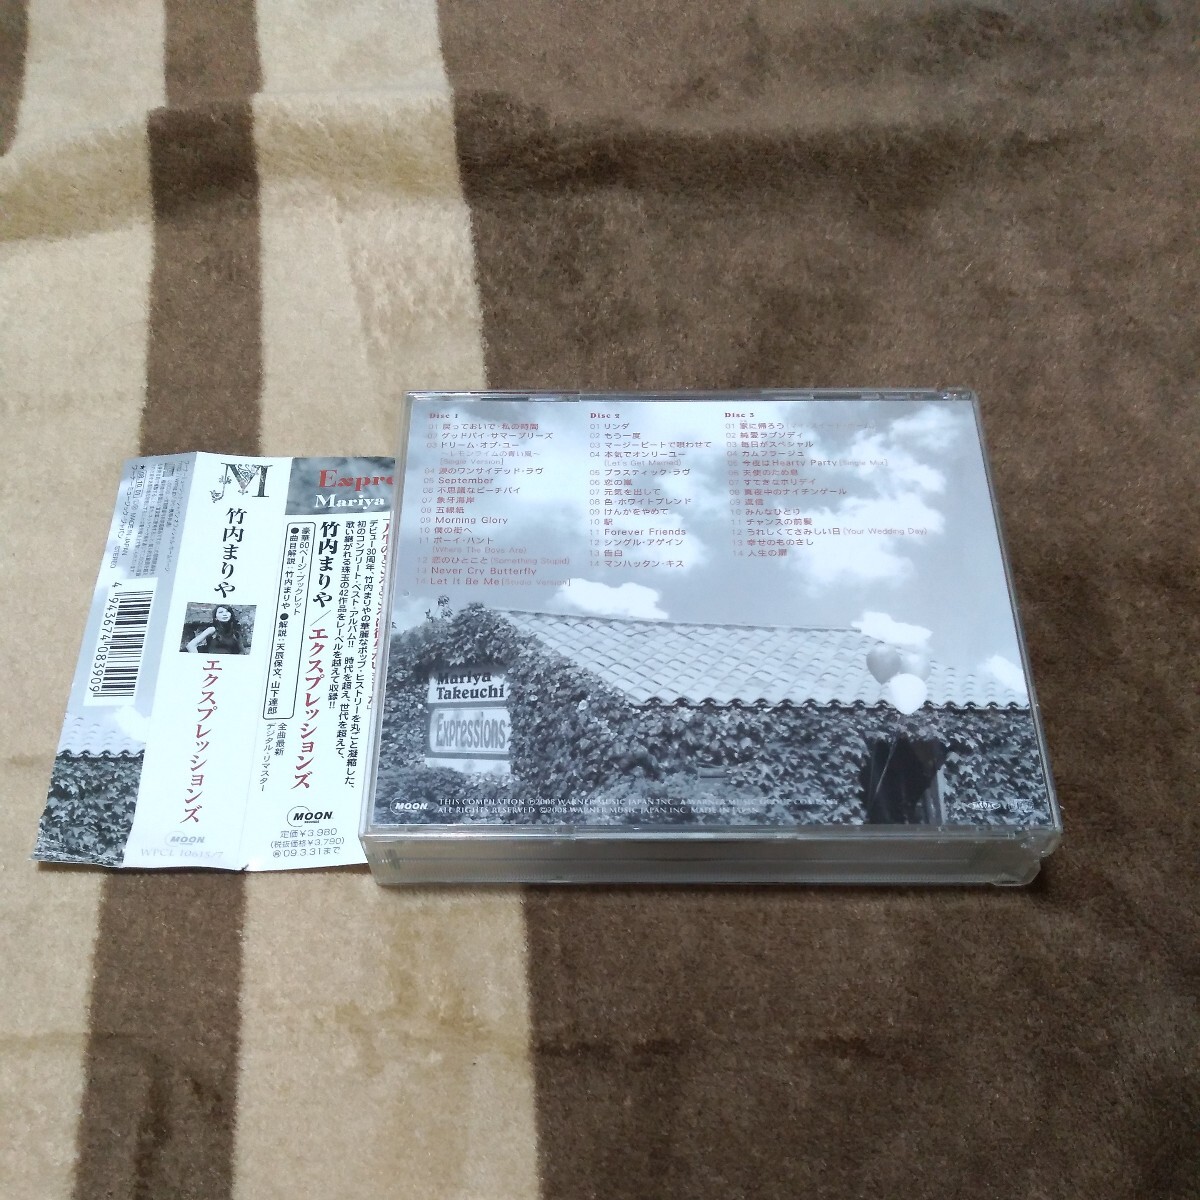 3枚組CD:竹内まりや / Expressions(エクスプレッションズ) 通常盤 / ワーナーミュージック(WPCL-10615-7) ベストアルバム 帯付き_画像2